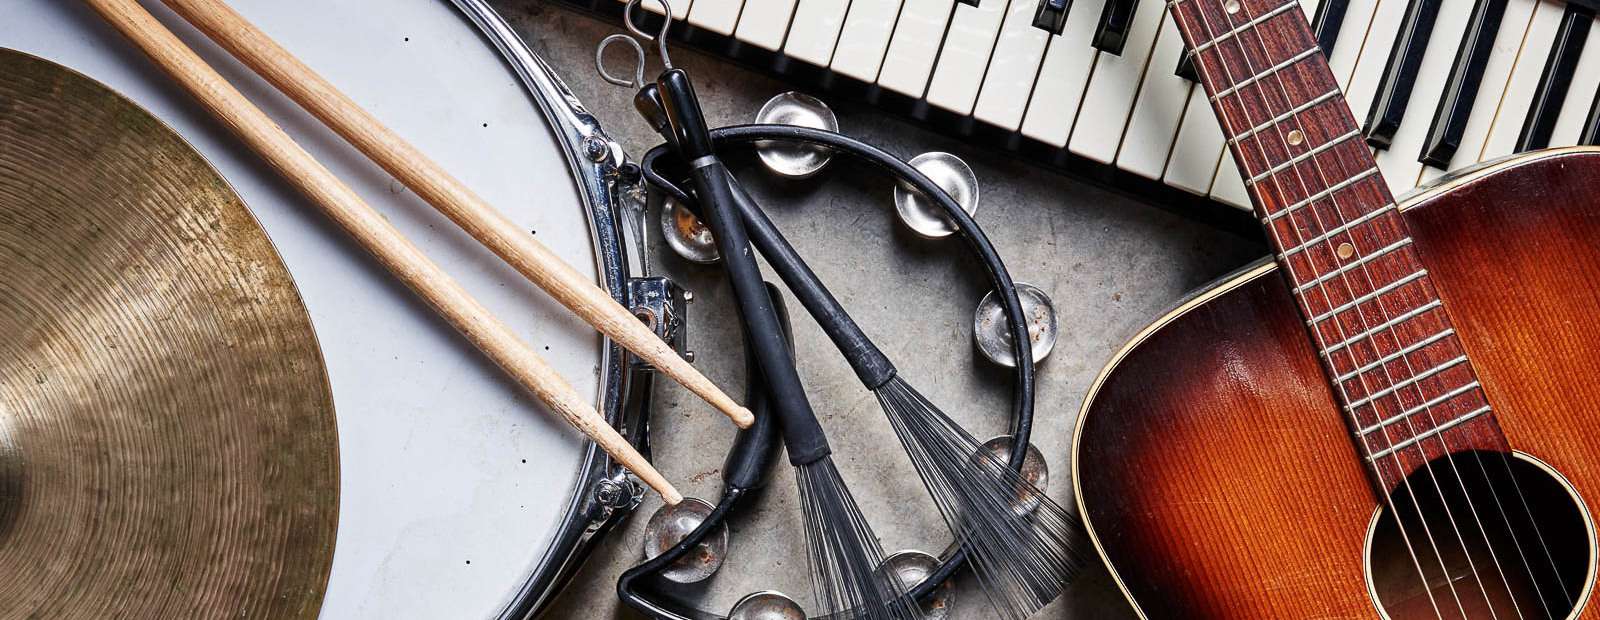 GarageBand предлагает большой выбор музыкальных инструментов